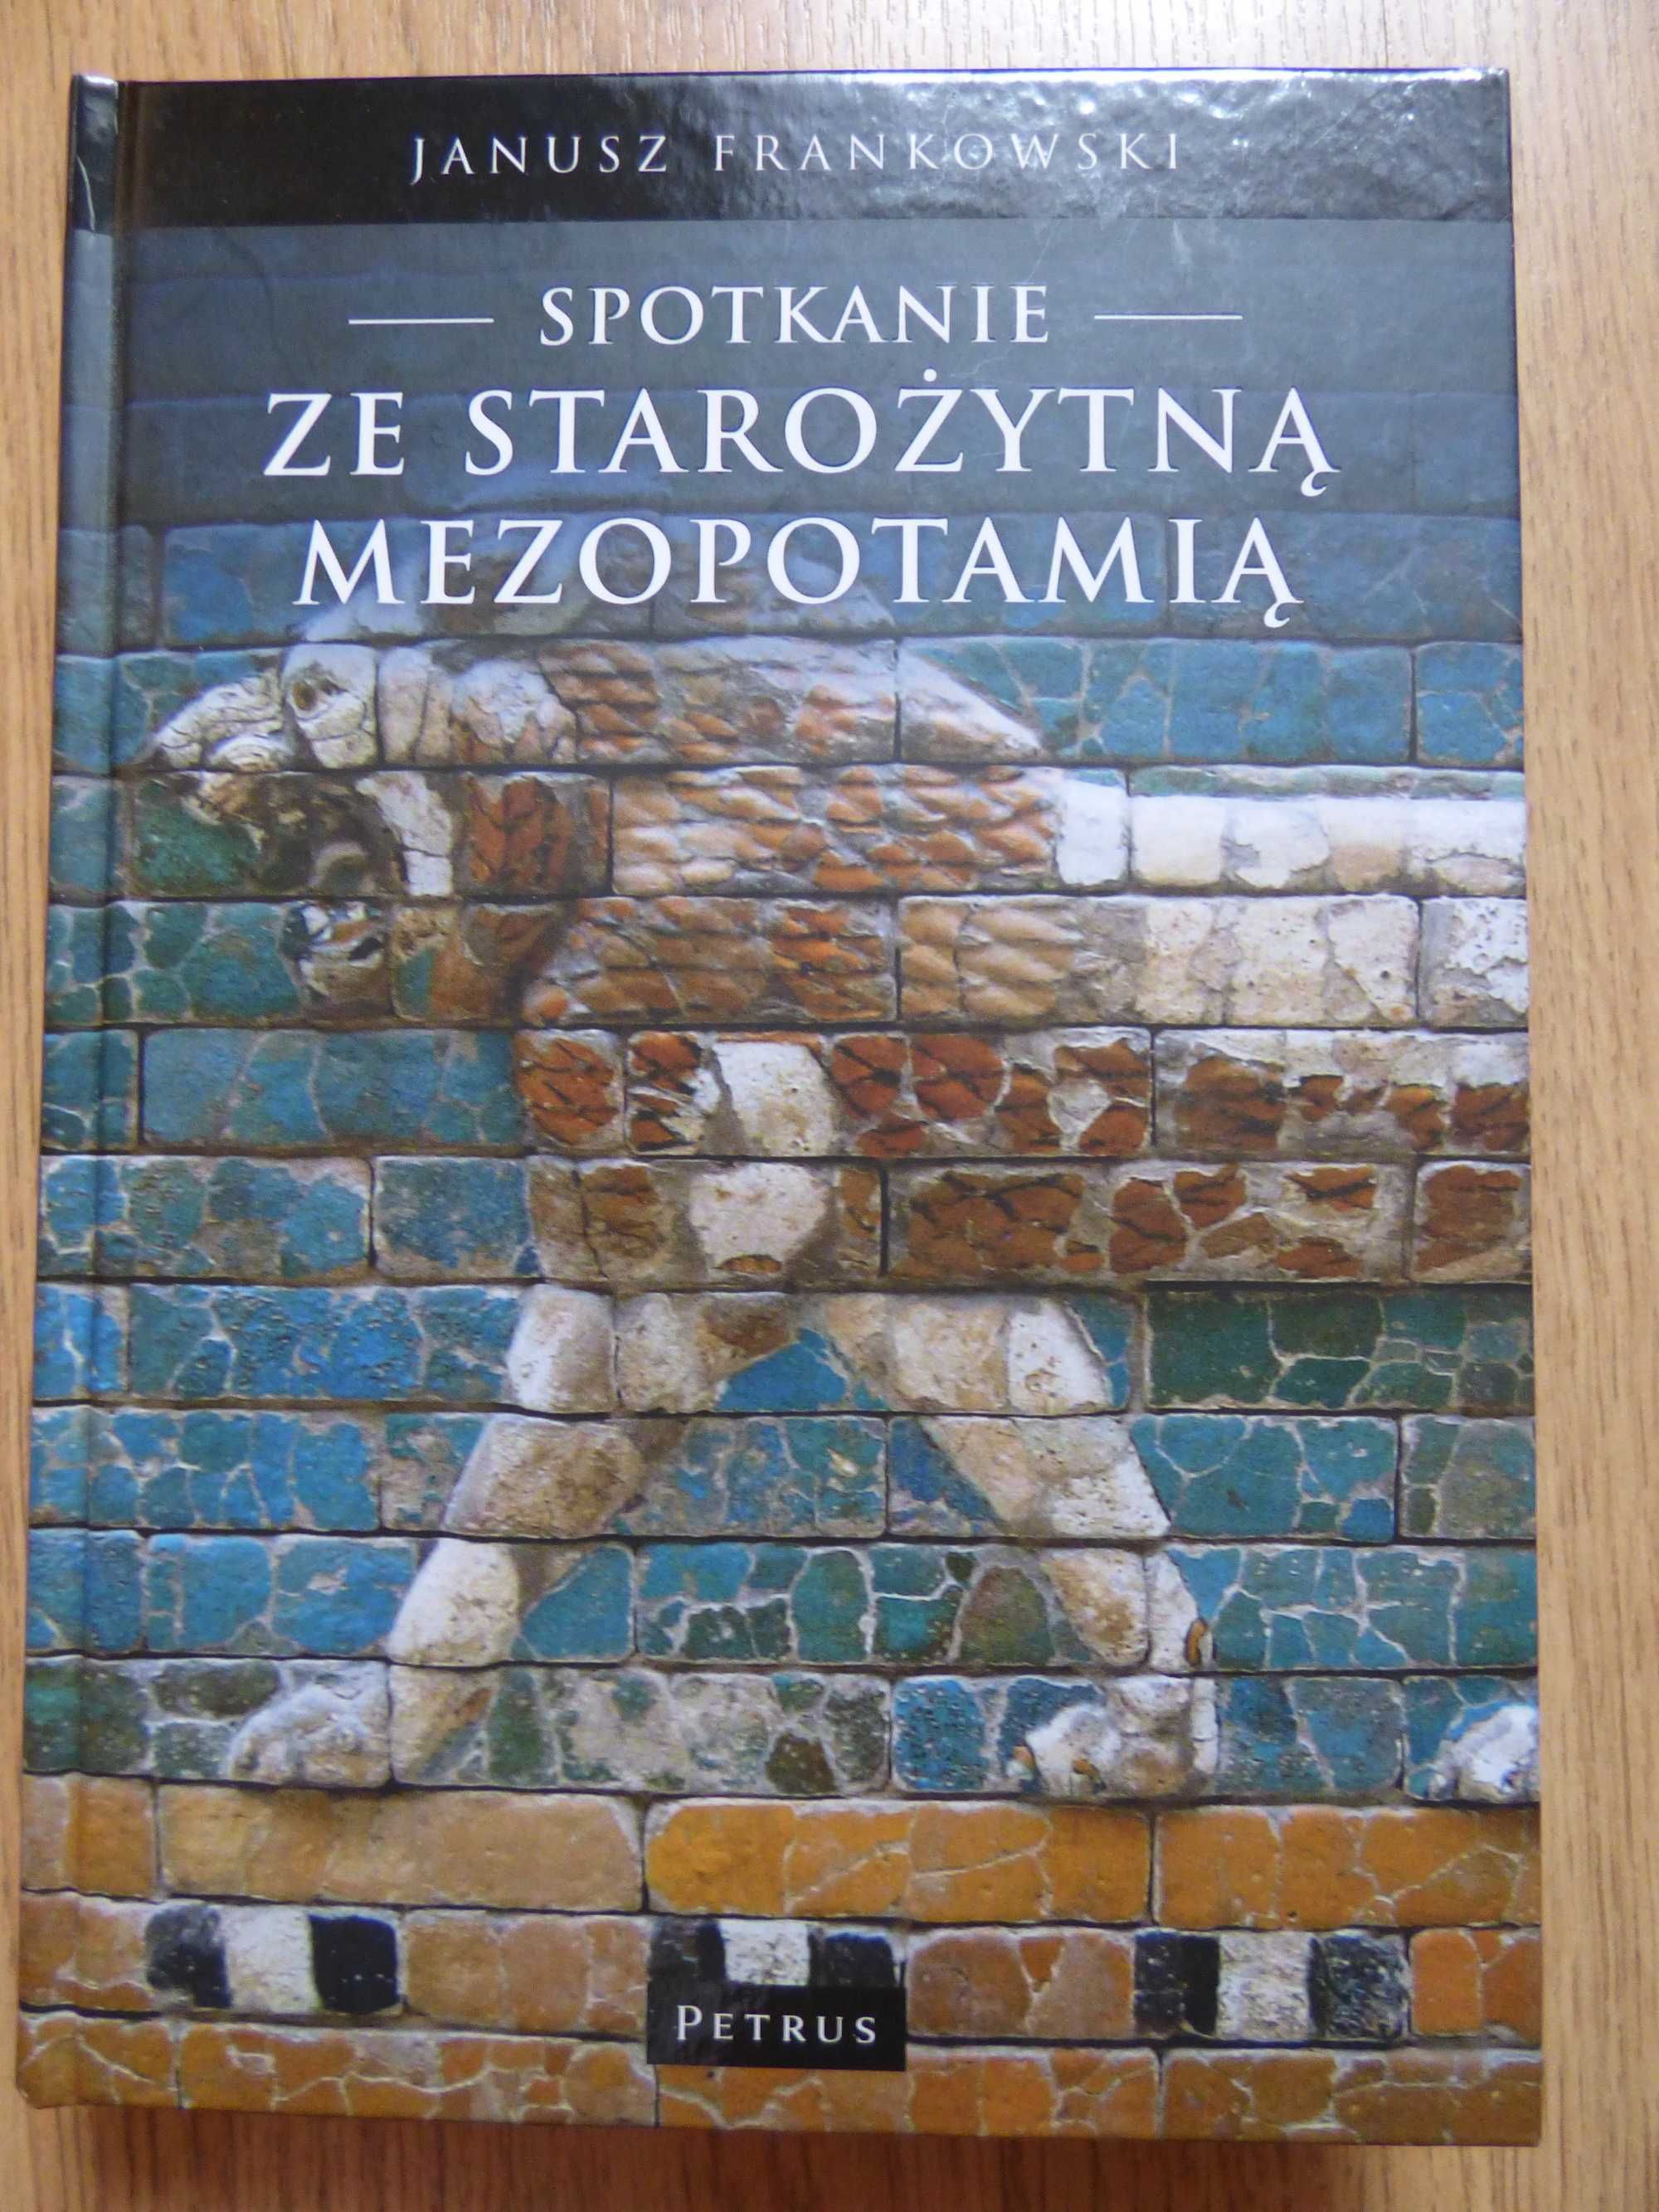 Spotkanie ze Starożytną Mezopotamią - Janusz Frankowski - Nowa